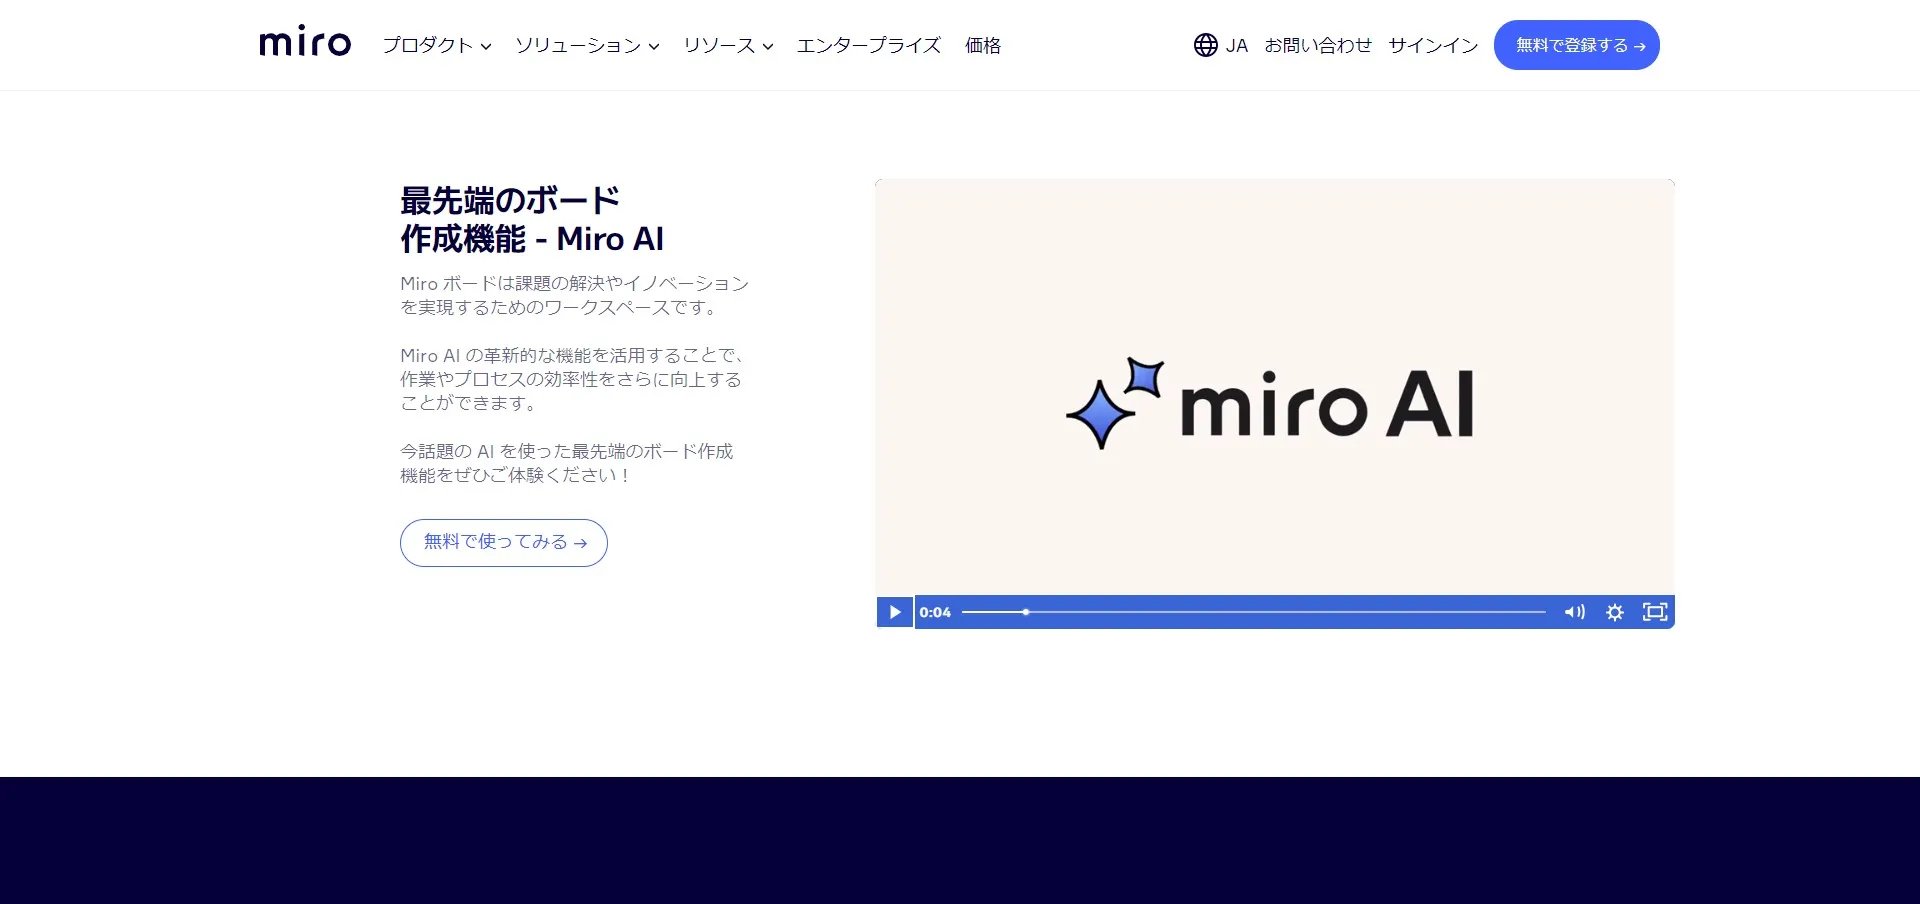 Miro AIの公式サイト